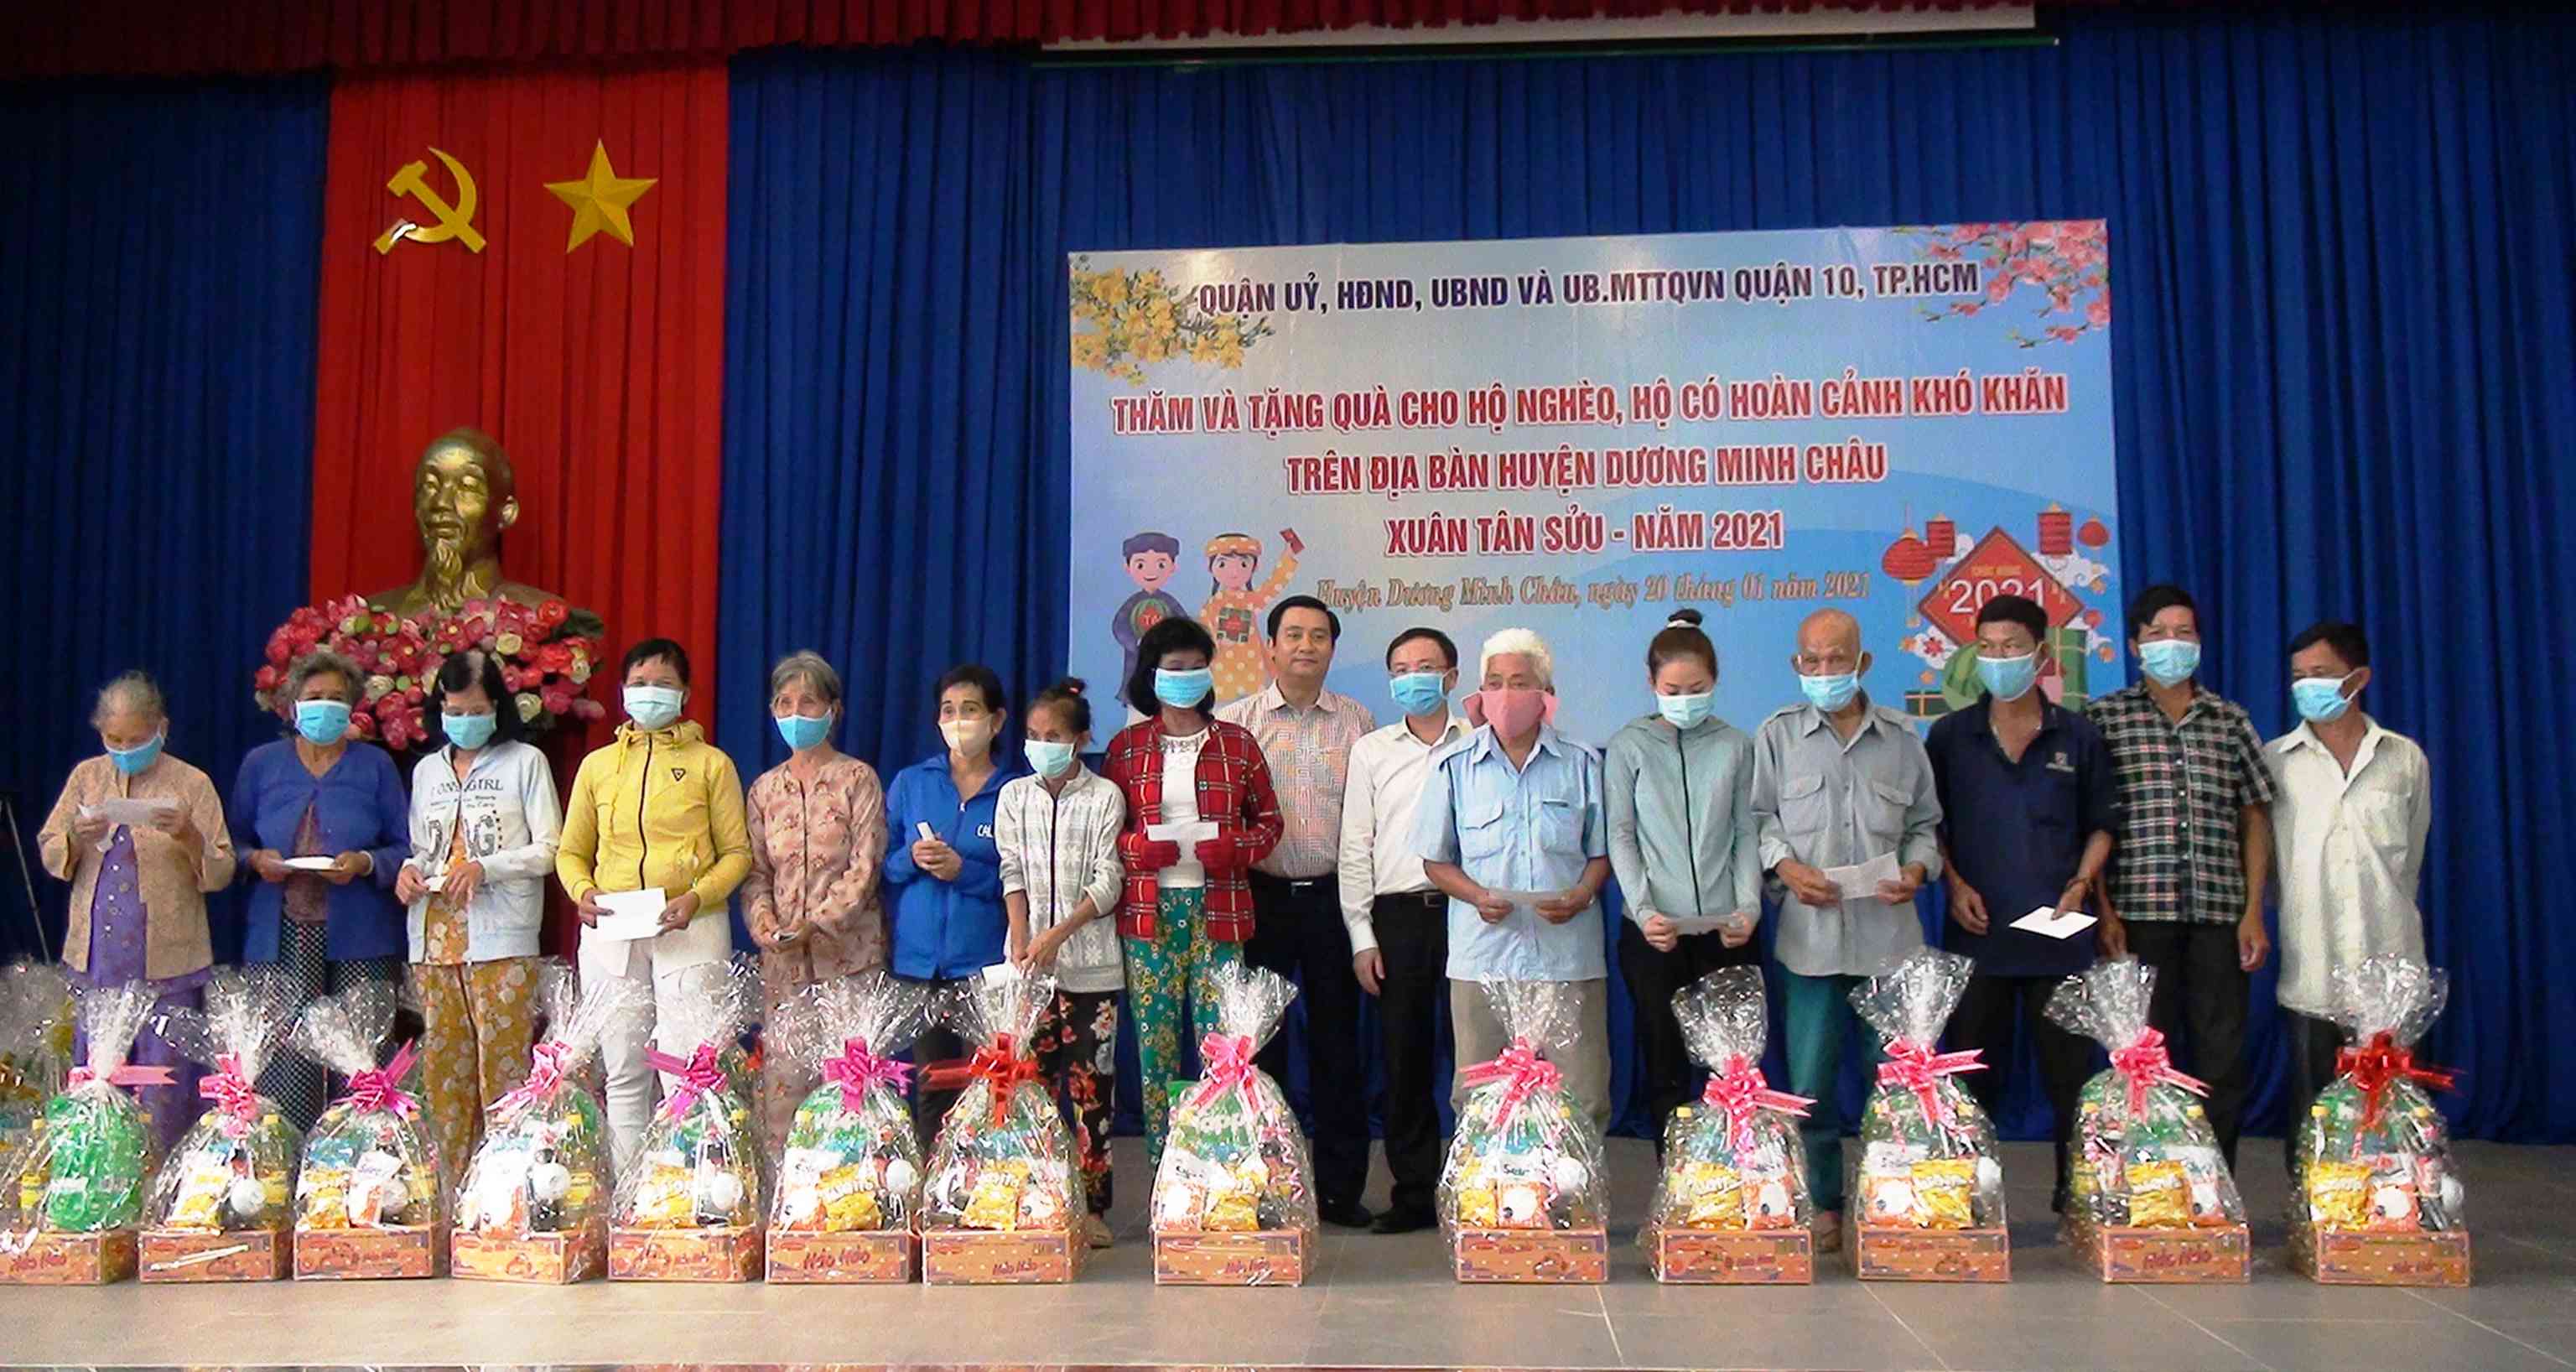 Quận 10 Tp Hồ Chí Minh: Tài trợ trao tặng 100 phần quà tết cho người dân huyện Dương Minh Châu